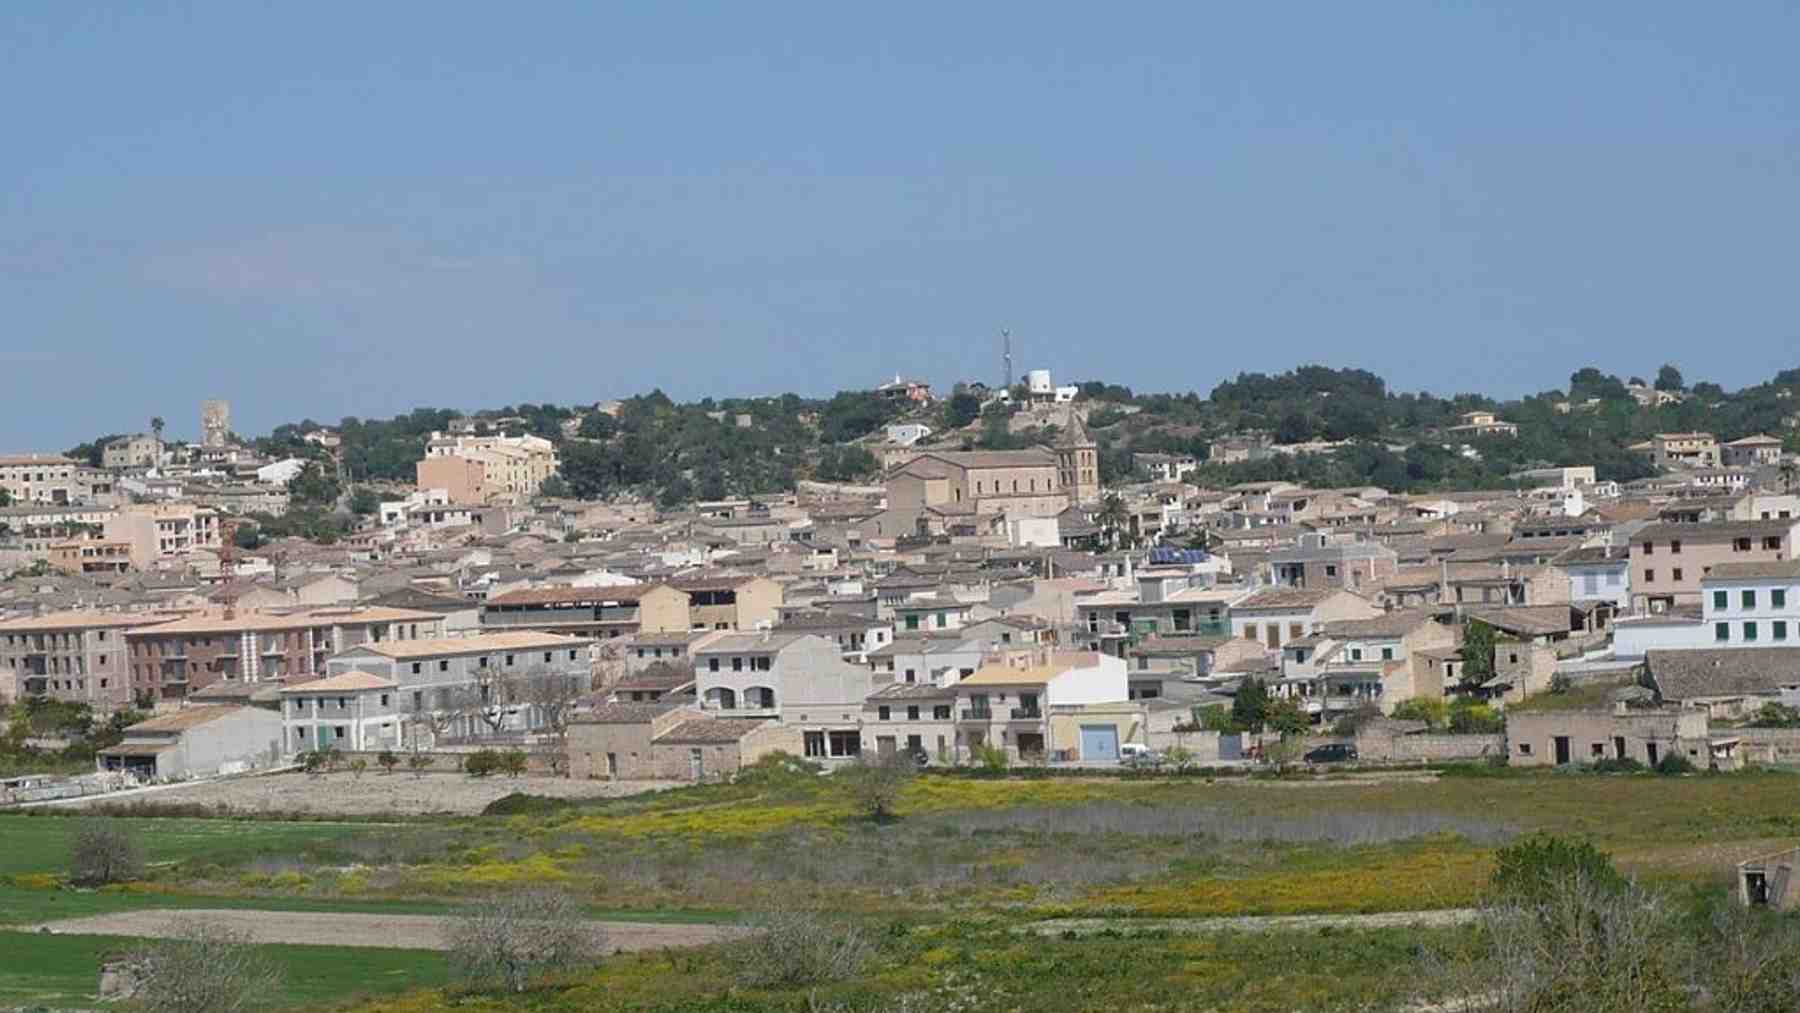 Sant Joan es el municipio más barato para comprar una casa en Baleares, con un precio medio de 1.237 euros el m2.